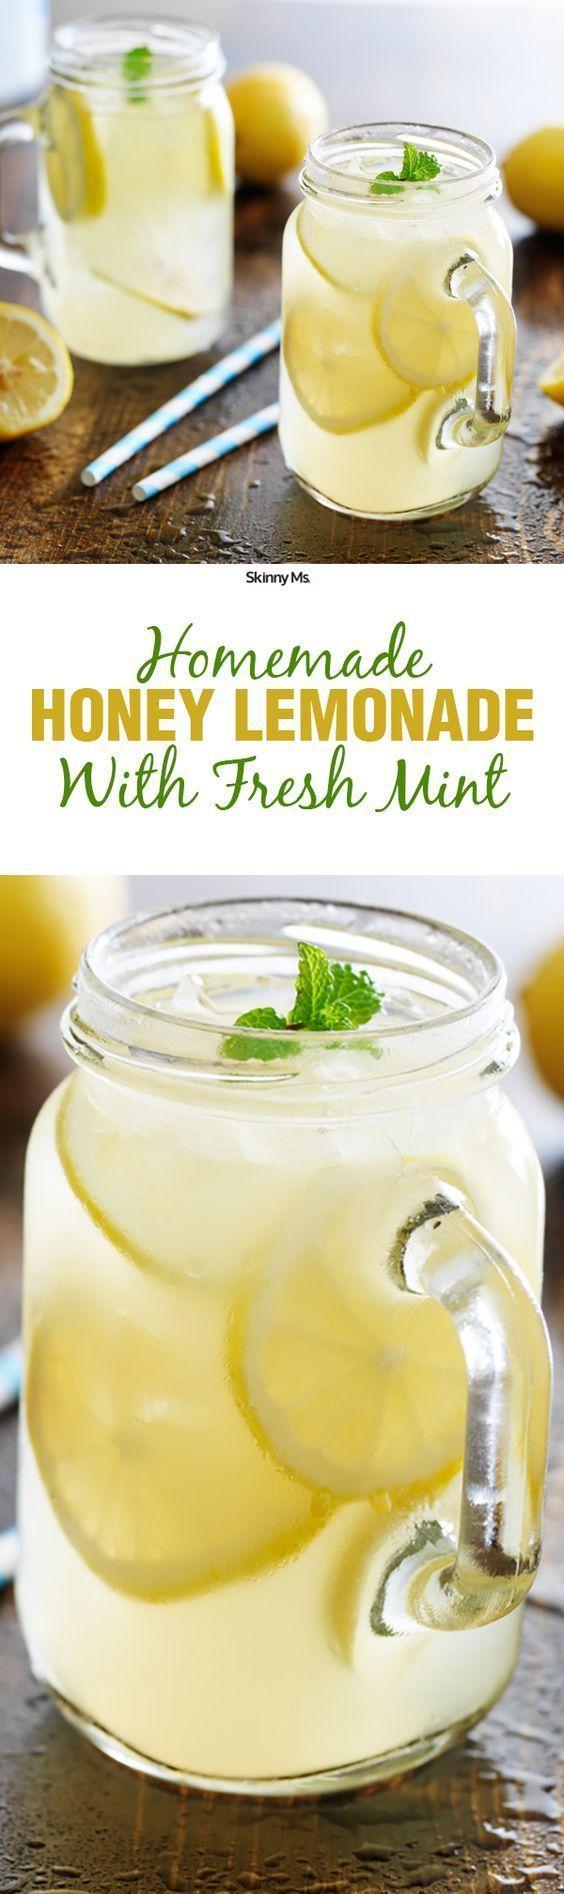 Свадьба - Homemade Honey Lemonade With Fresh Mint